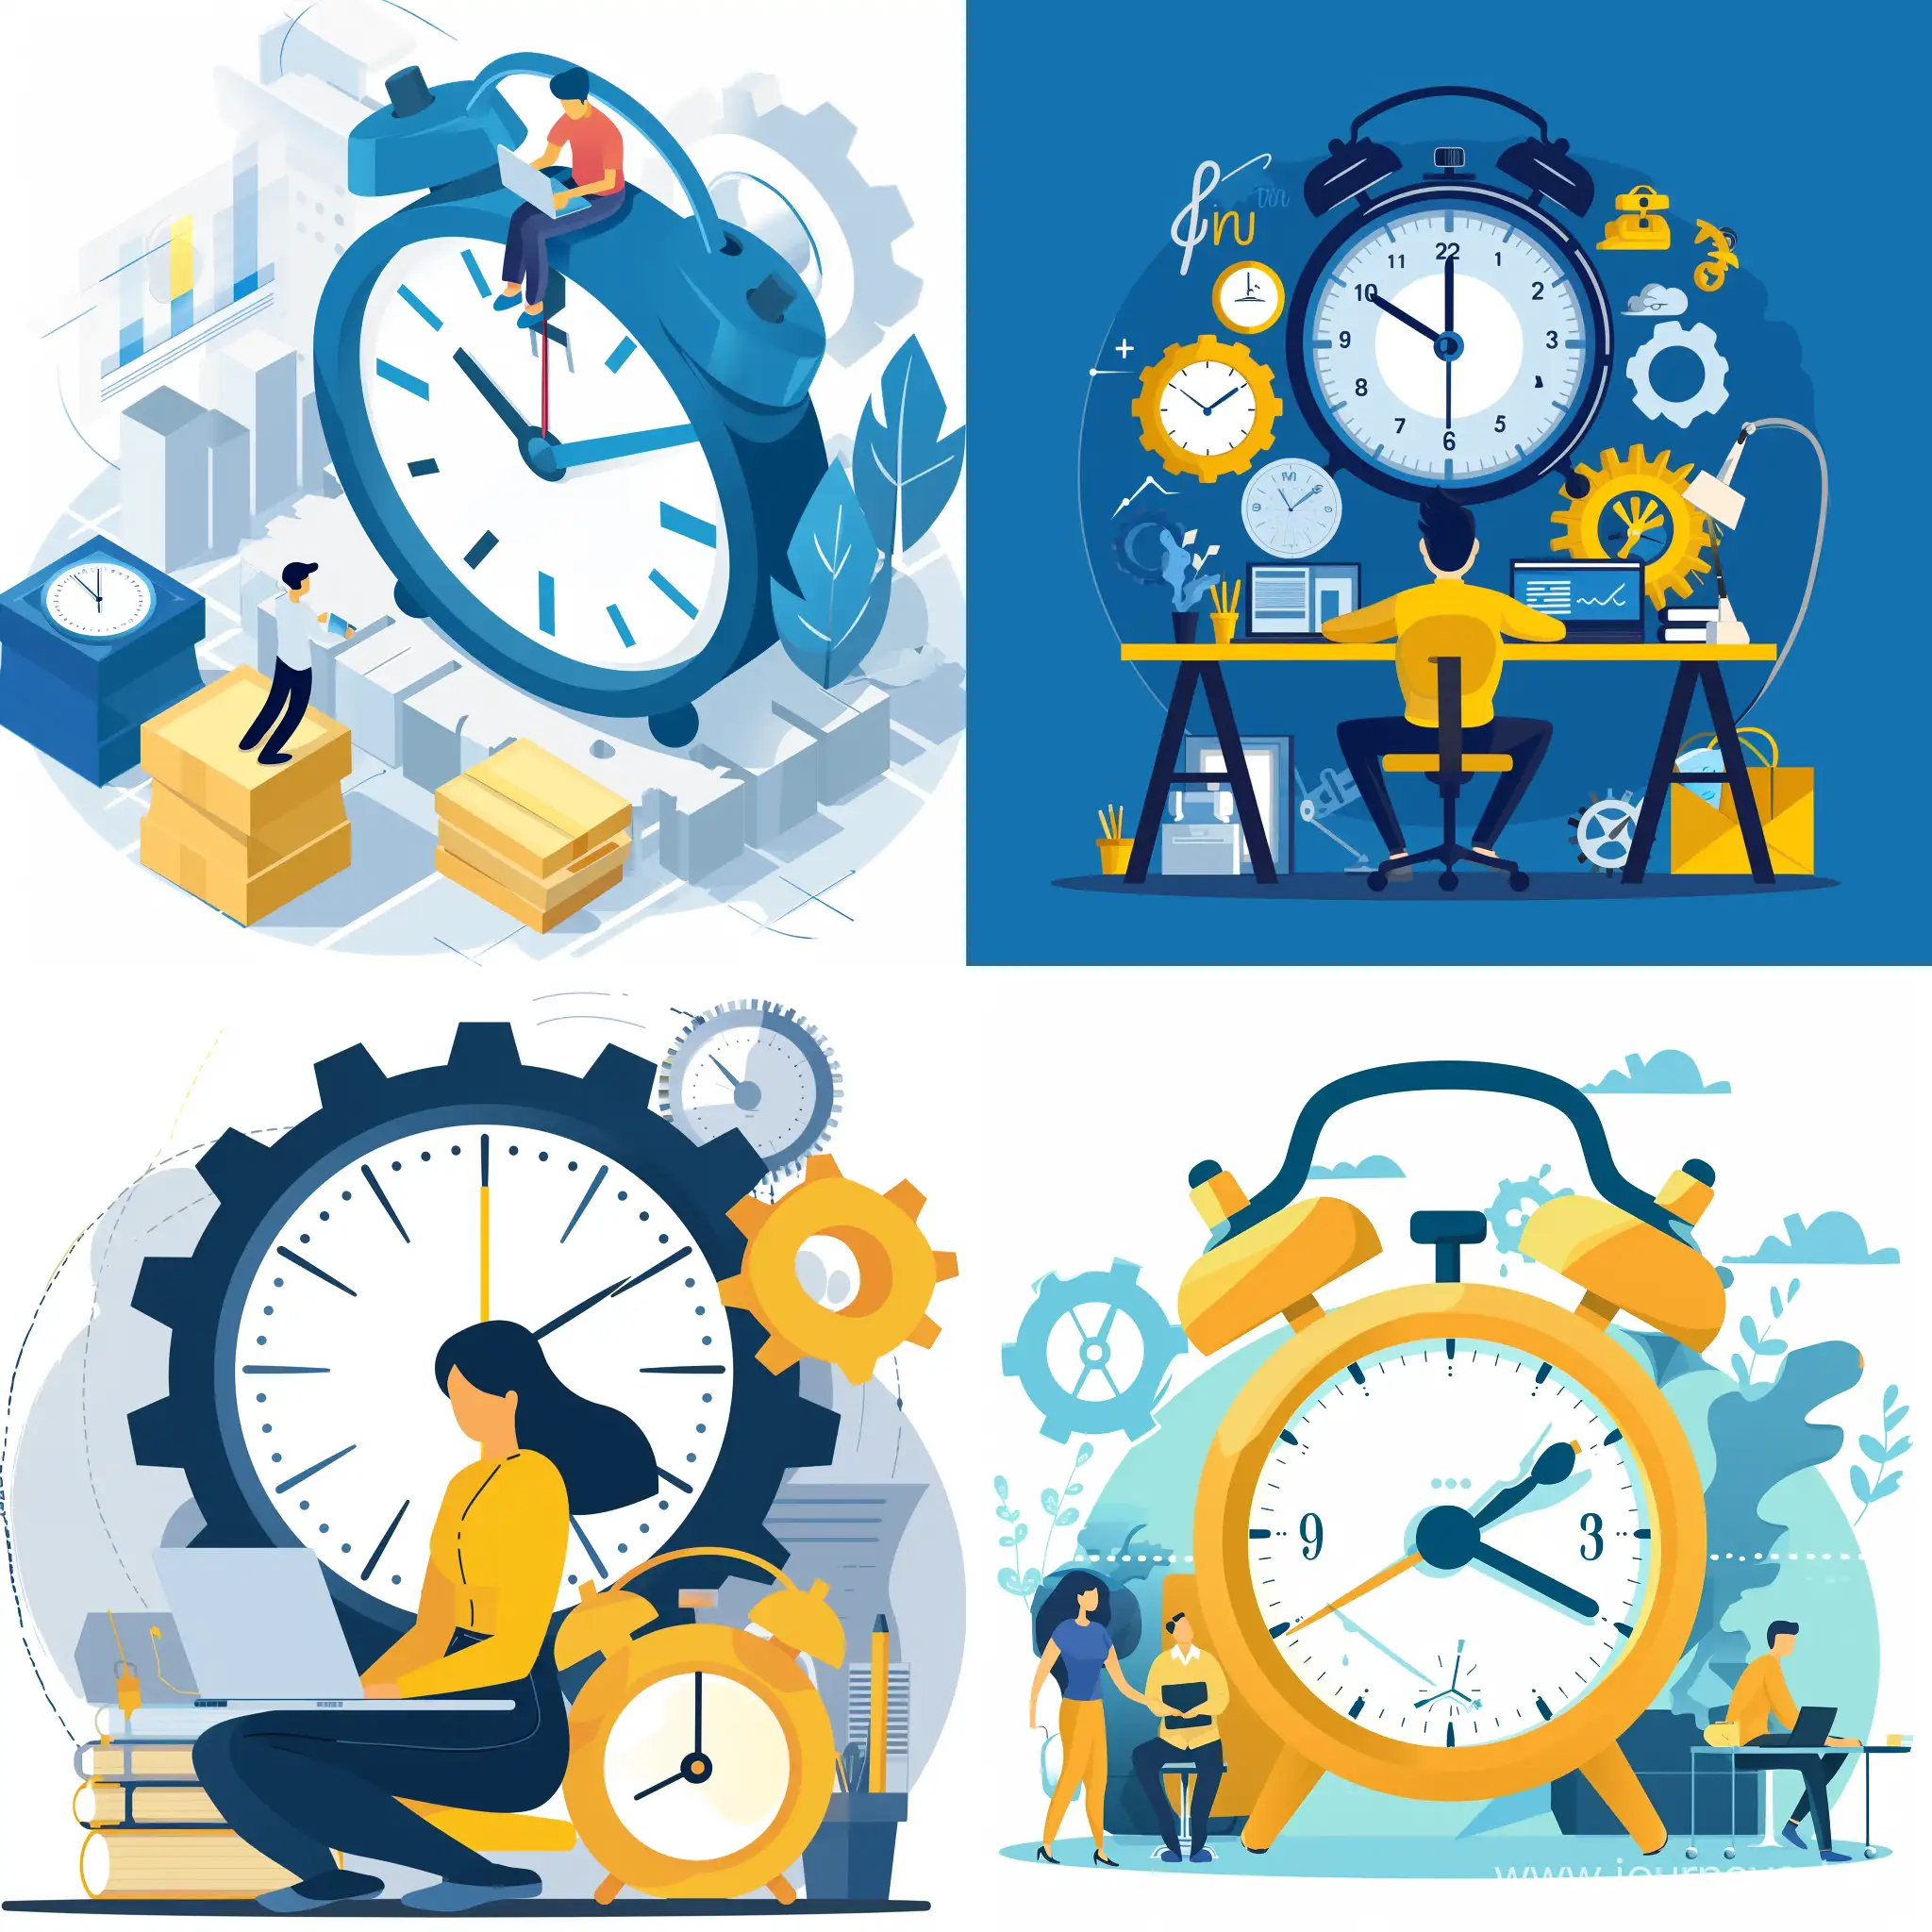 Efficient-Time-Management-and-Productivity-Improvement-Concept